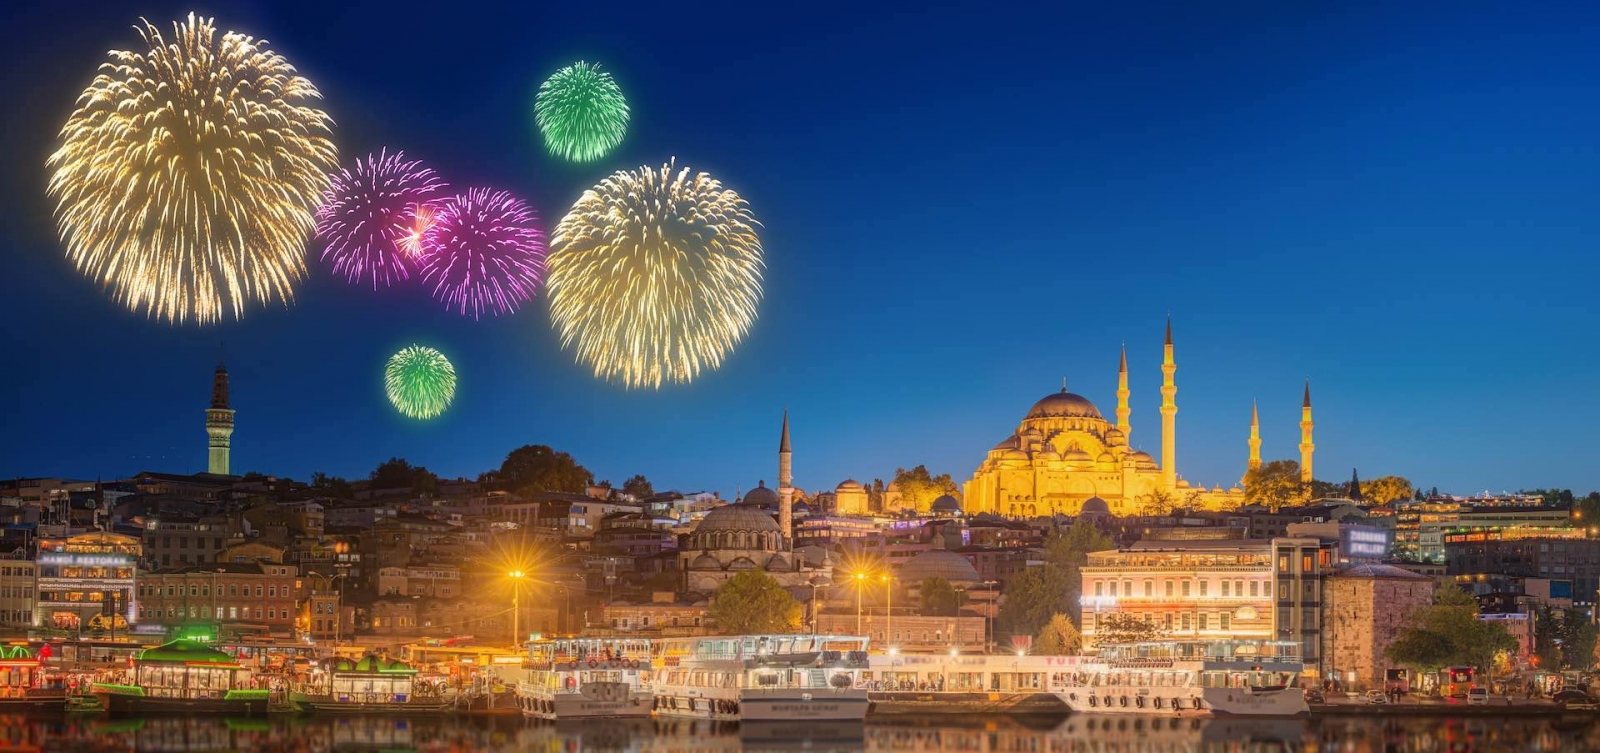 Wunderschönes Feuerwerk und Stadtbild von Istanbul